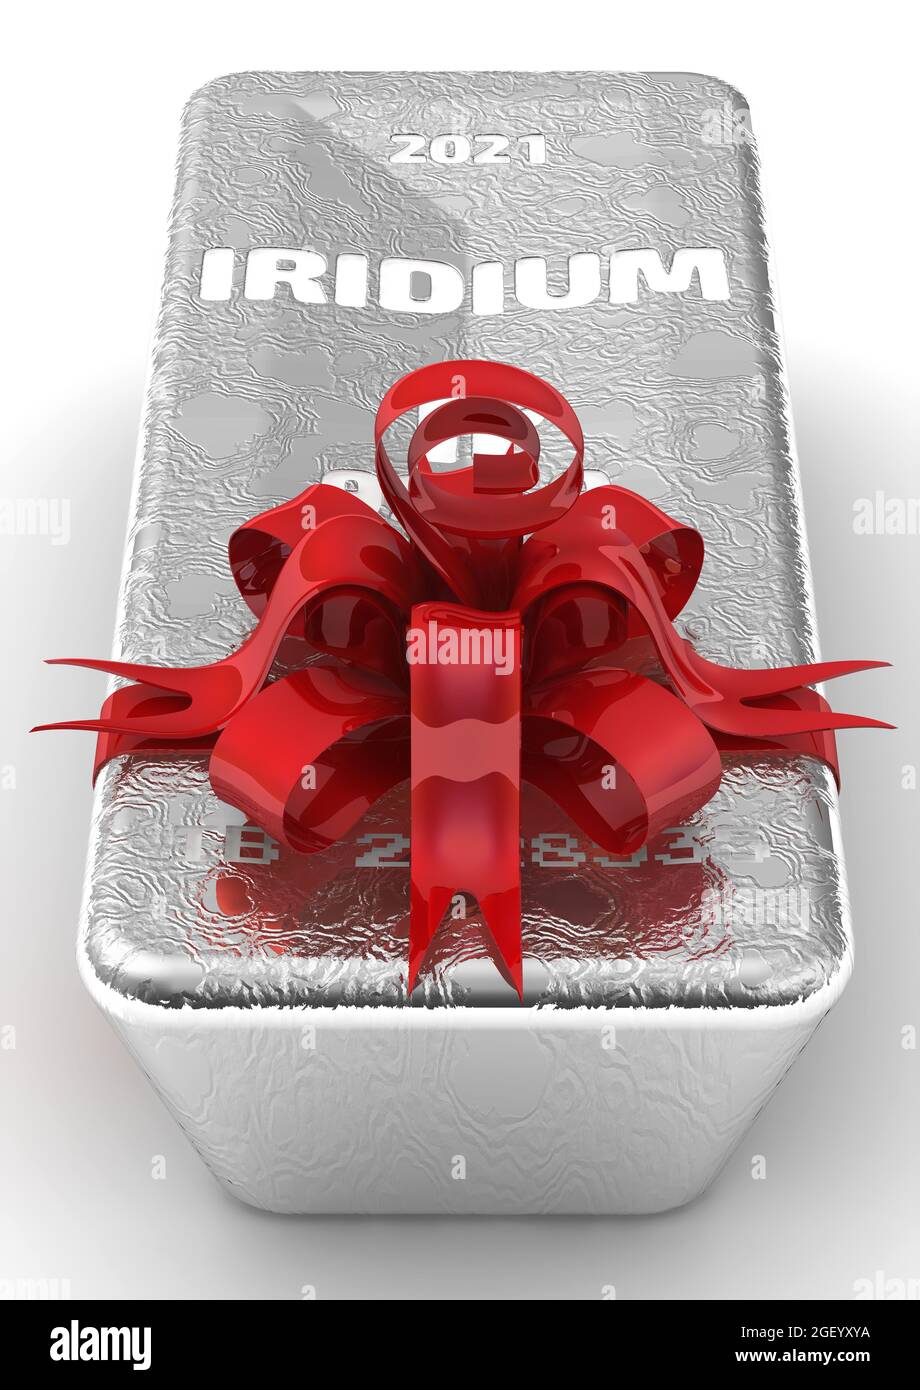 Iridium-Ingot von höchstem Standard als Geschenk. Ein Barren von 999.9 Fine Iridium, gebunden mit einem roten Band und einem Bogen. 3D-Illustration Stockfoto